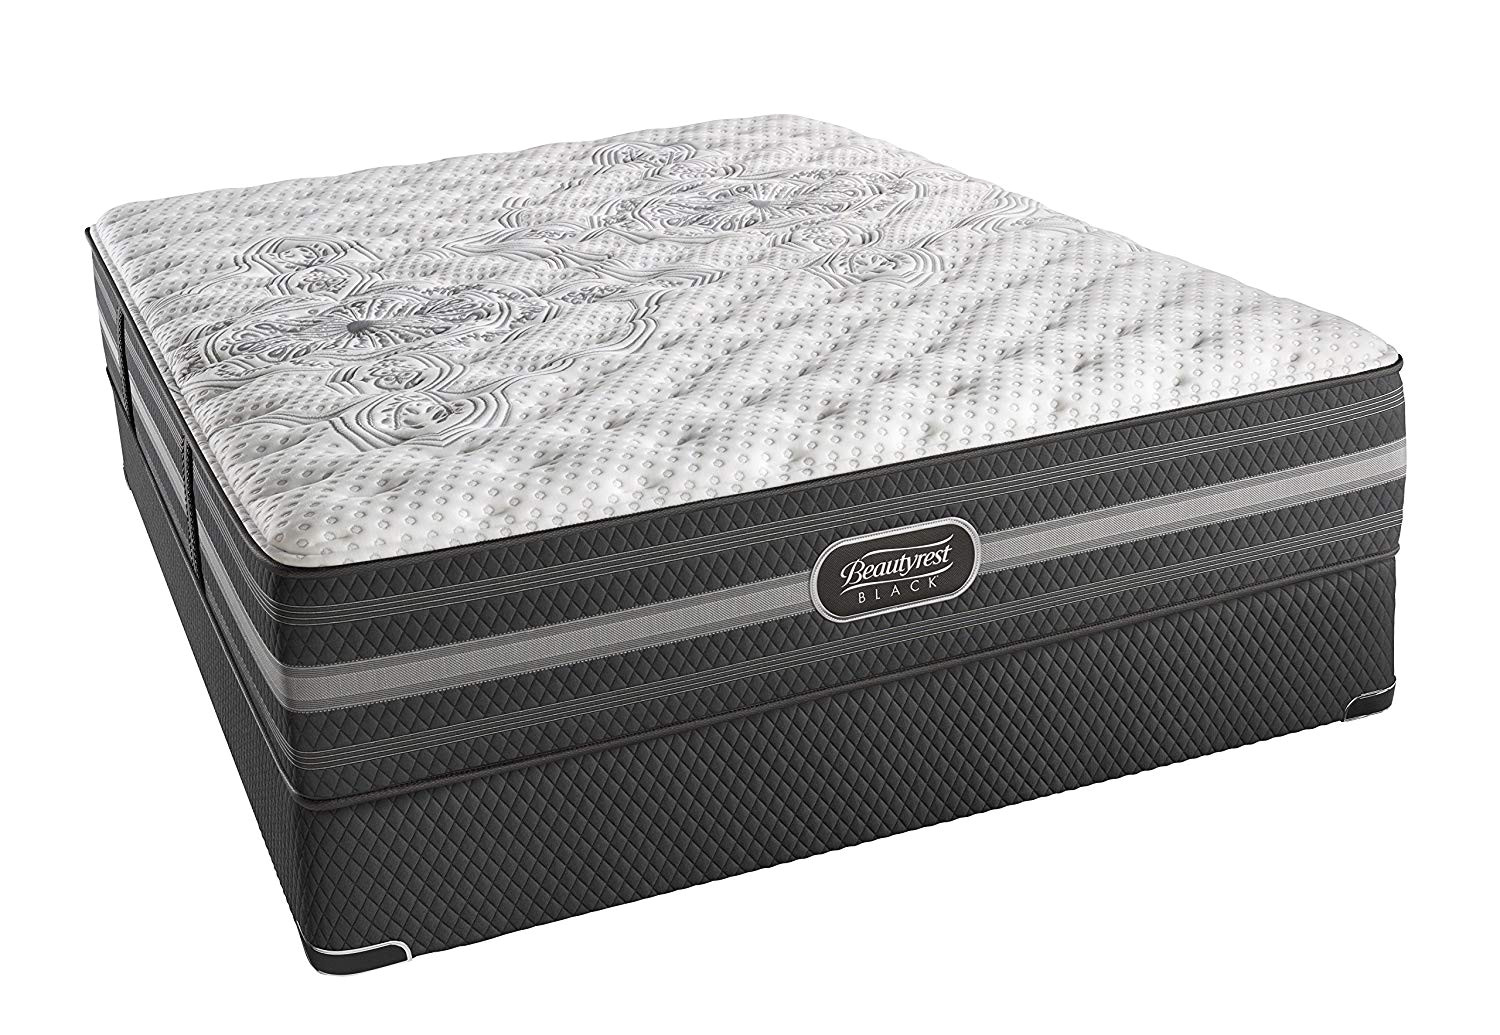 firm or extra firm mattress